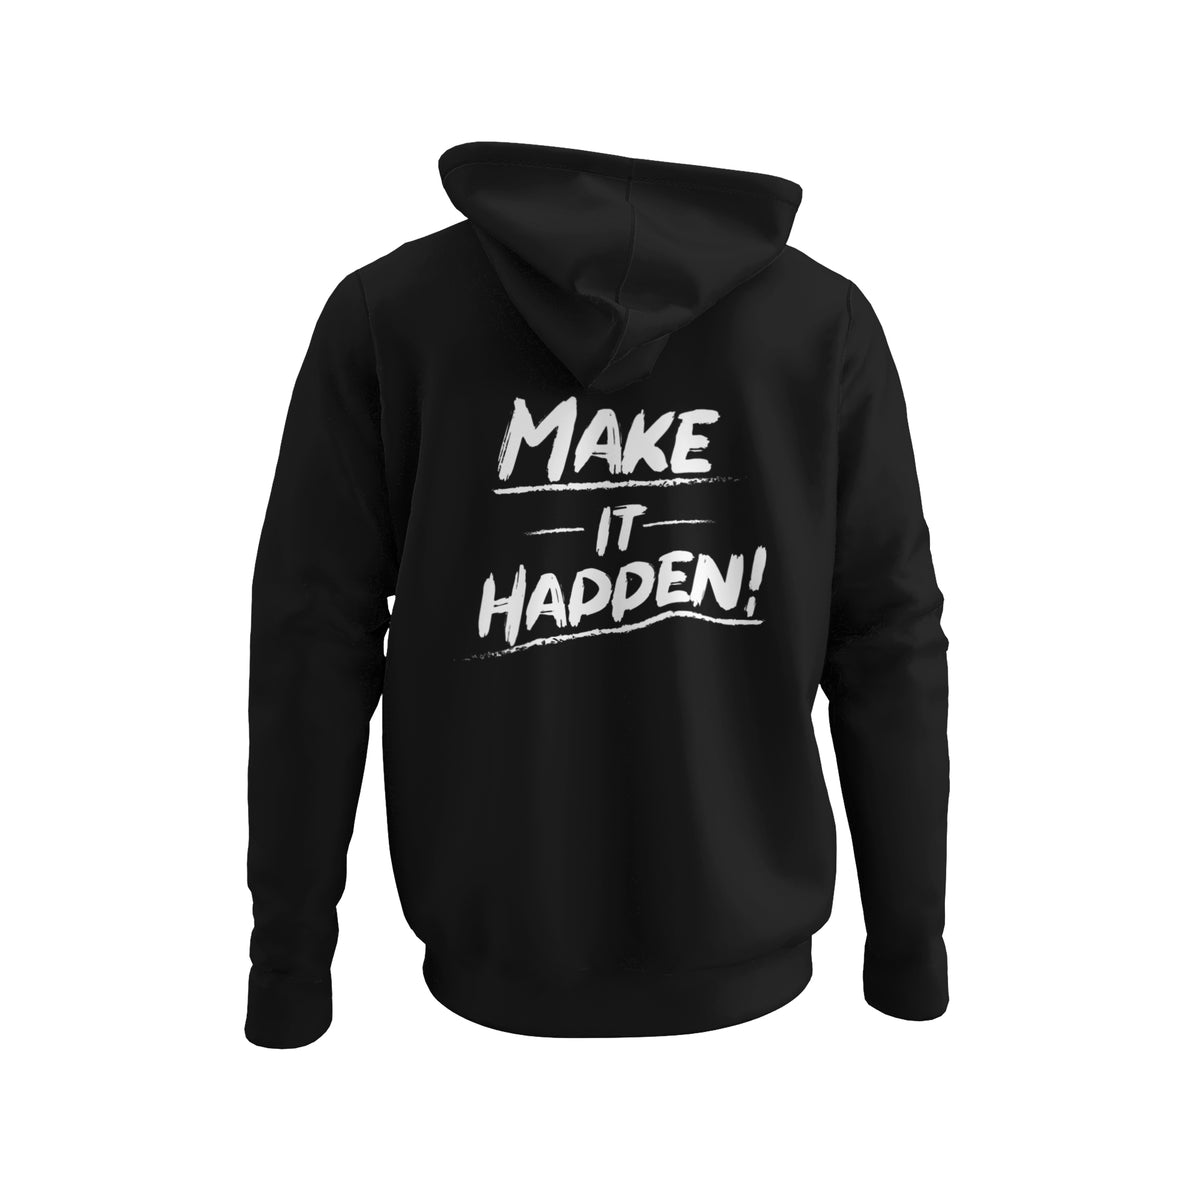 Bingo Brand "Make It Happen" Hoodie